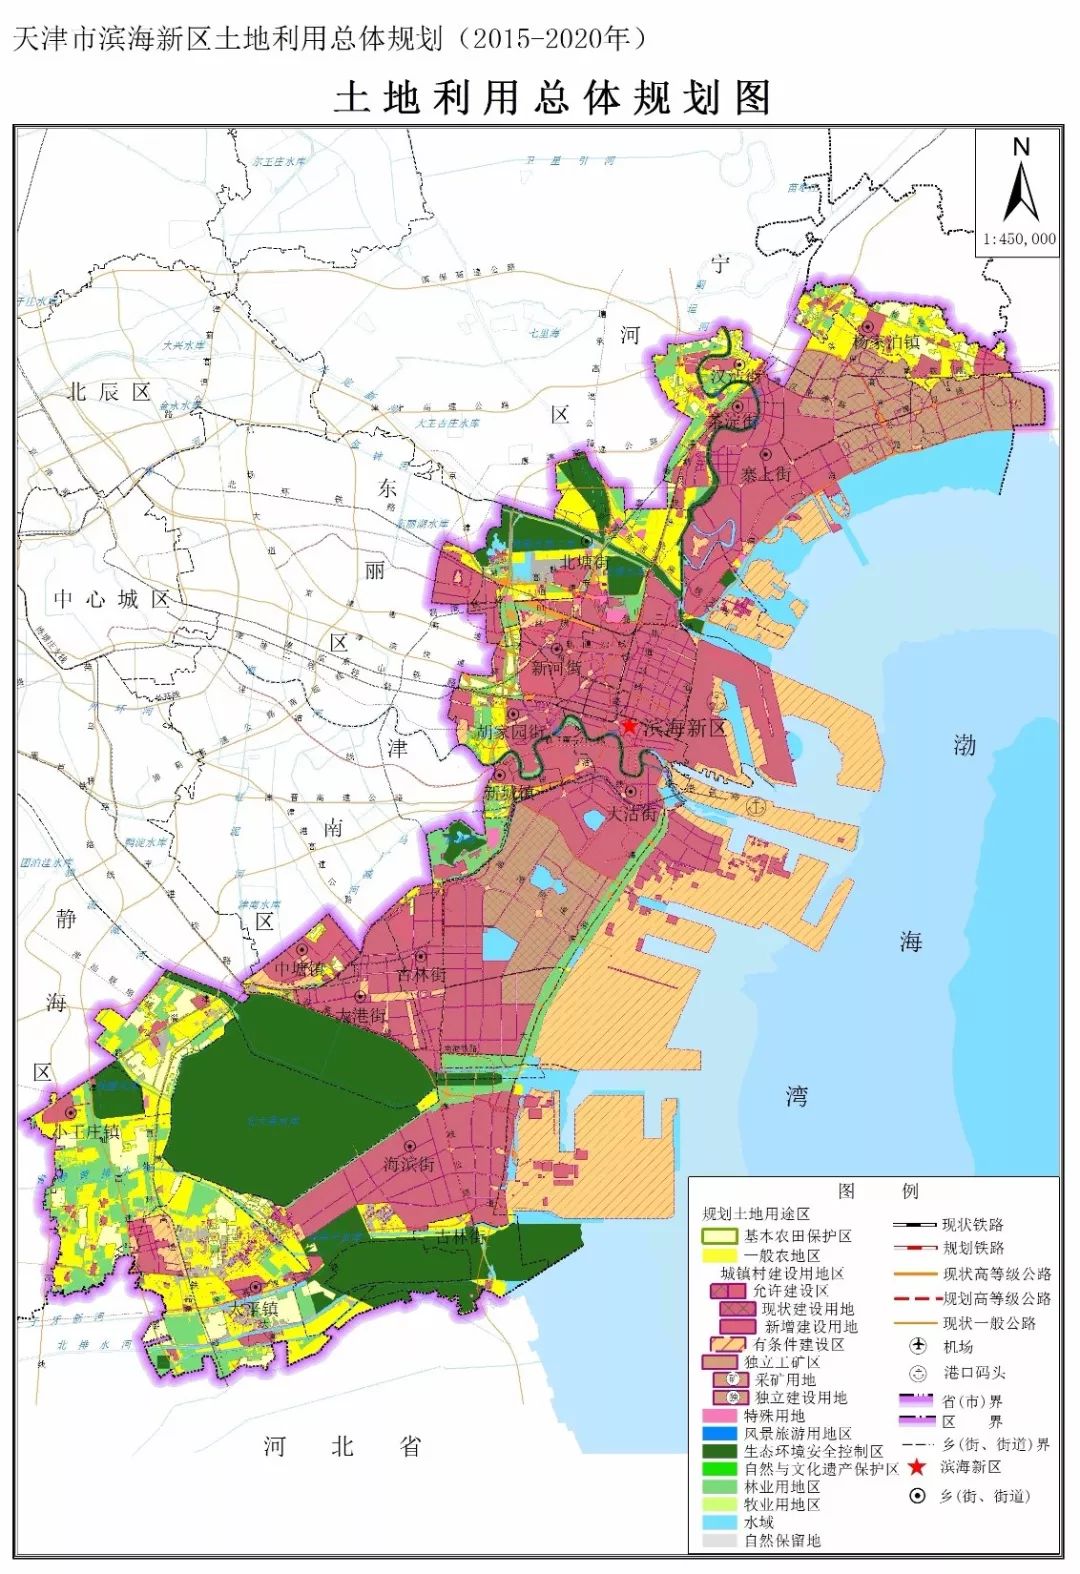 滨海新区土地利用总体规划发布2020年将建成这样